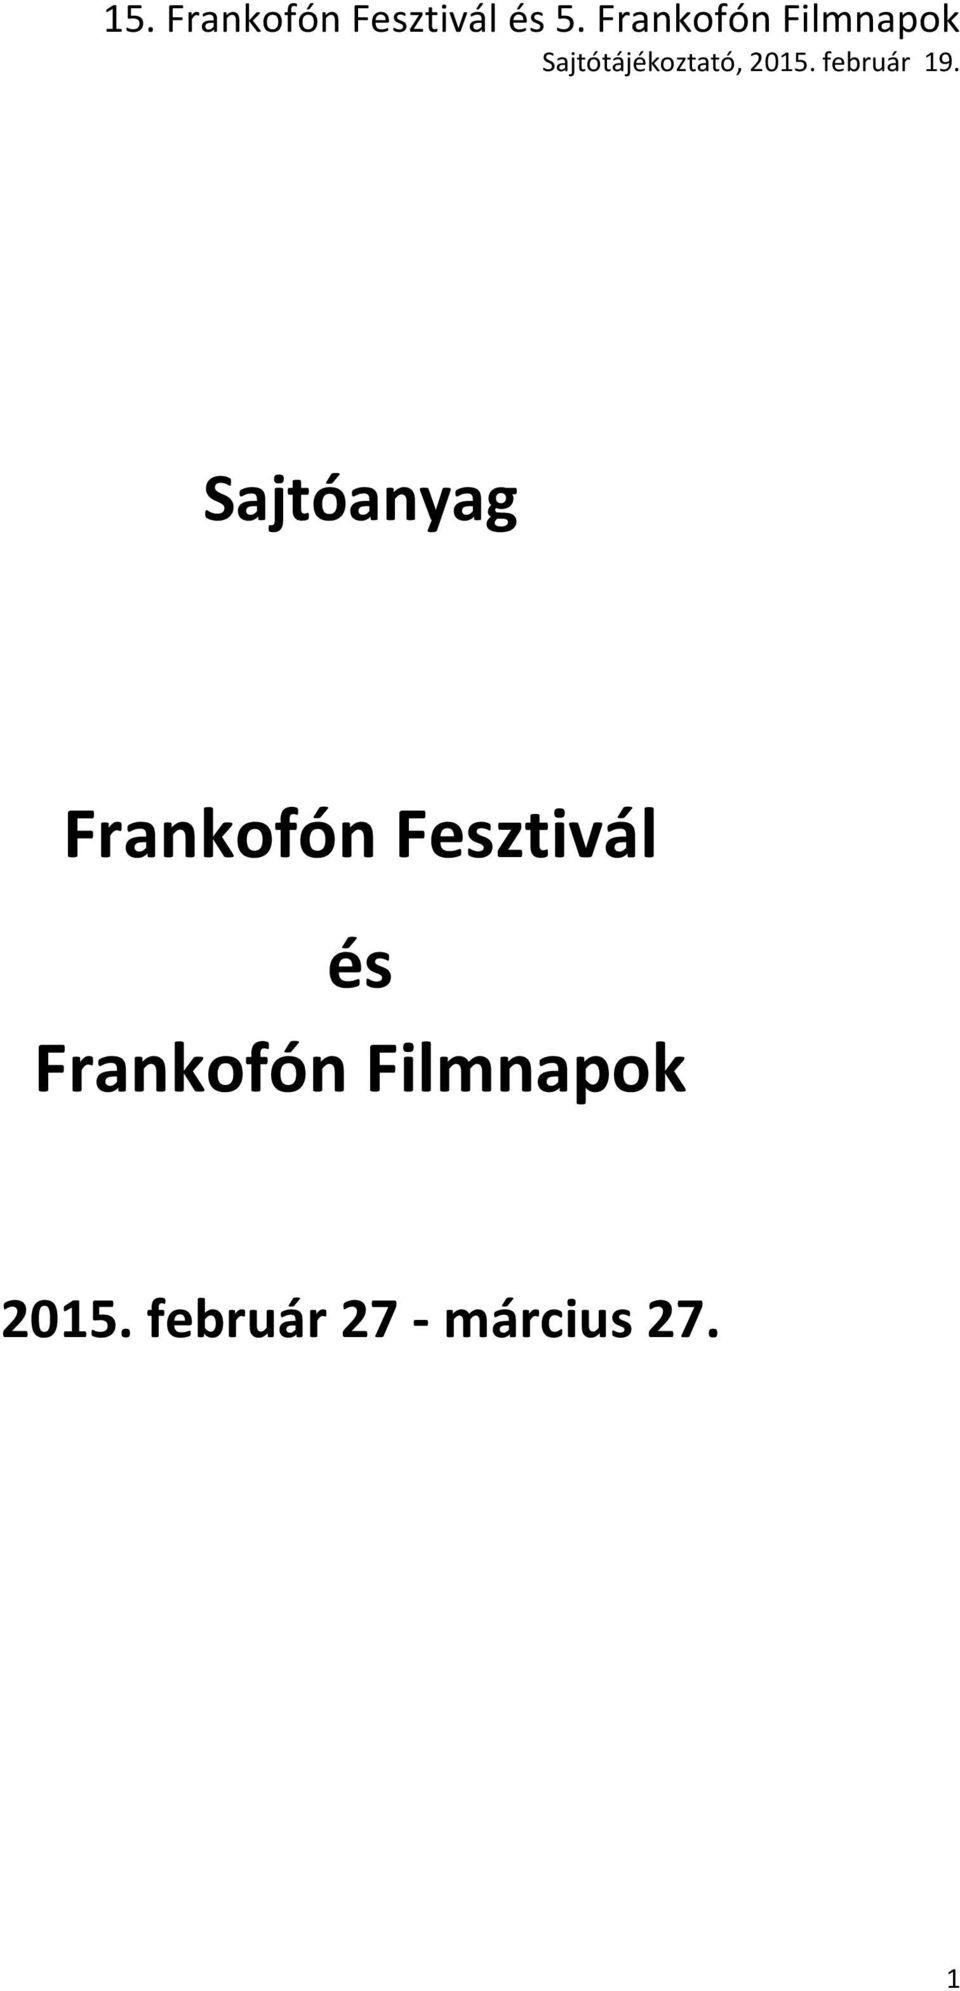 Frankofón Fesztivál és Frankofón Filmnapok - PDF Ingyenes letöltés